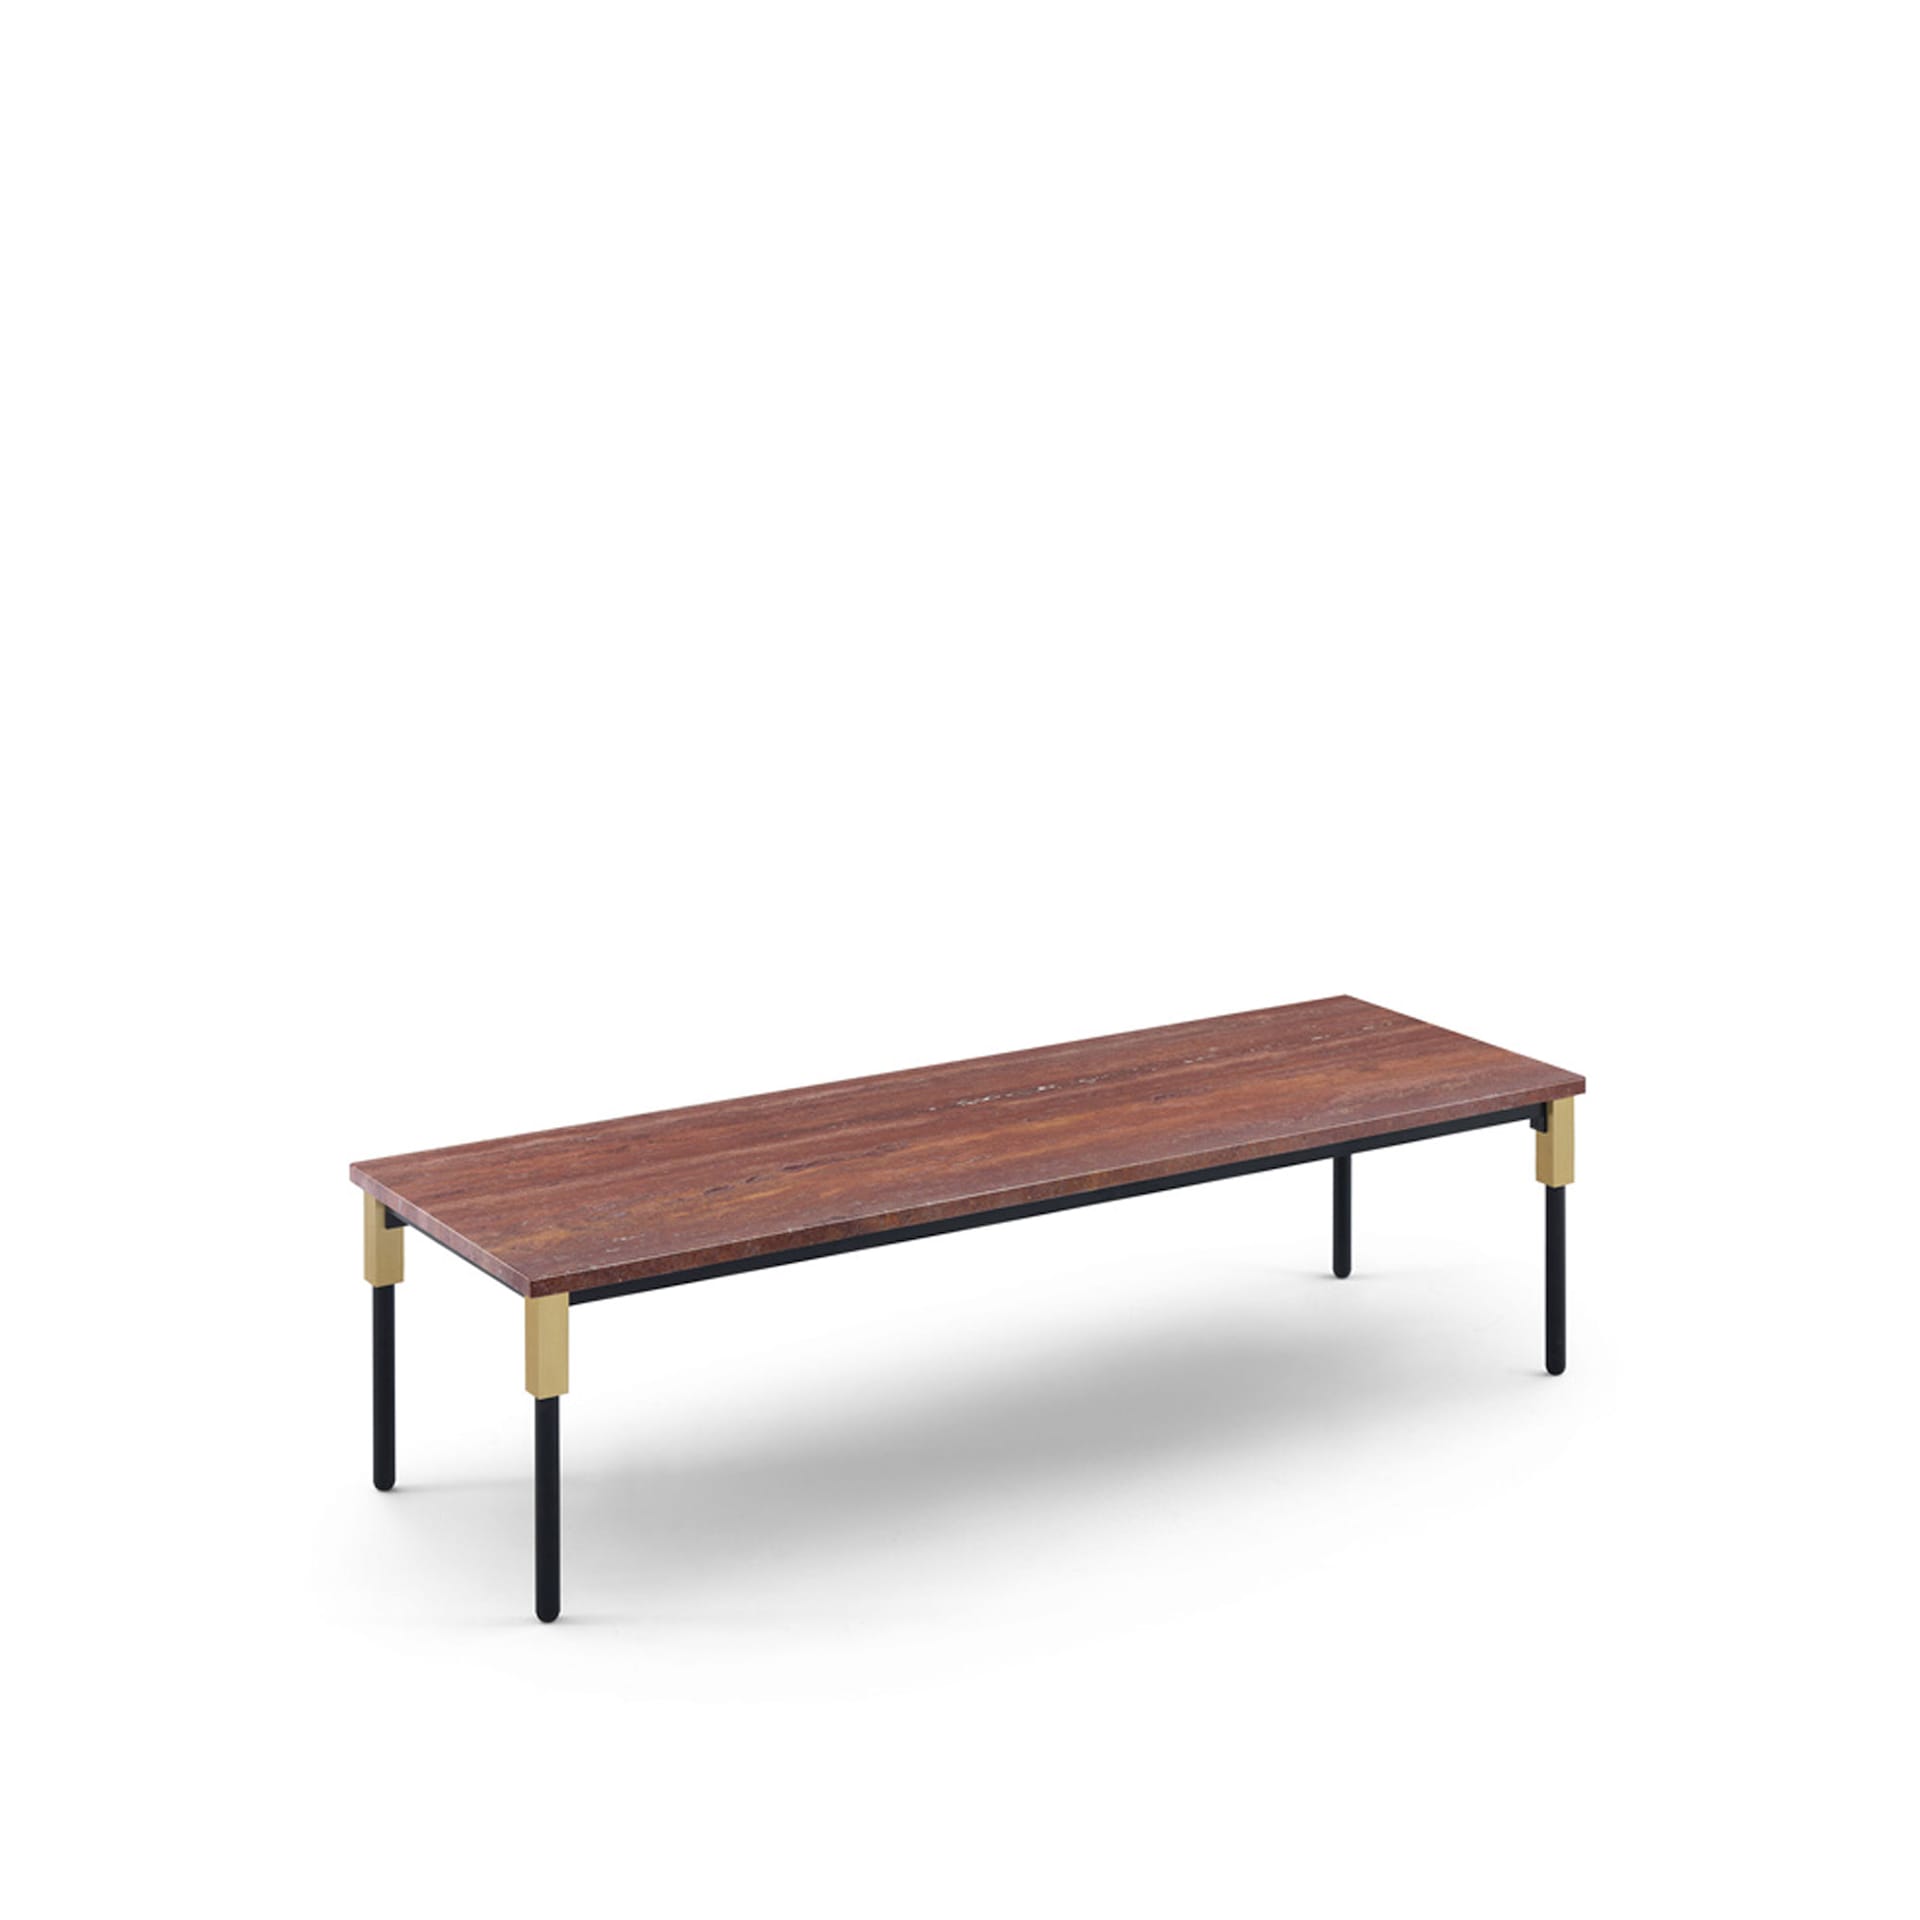 Match Small Table 122 x 42 cm - Travertino Rosso - Arflex - NO GA